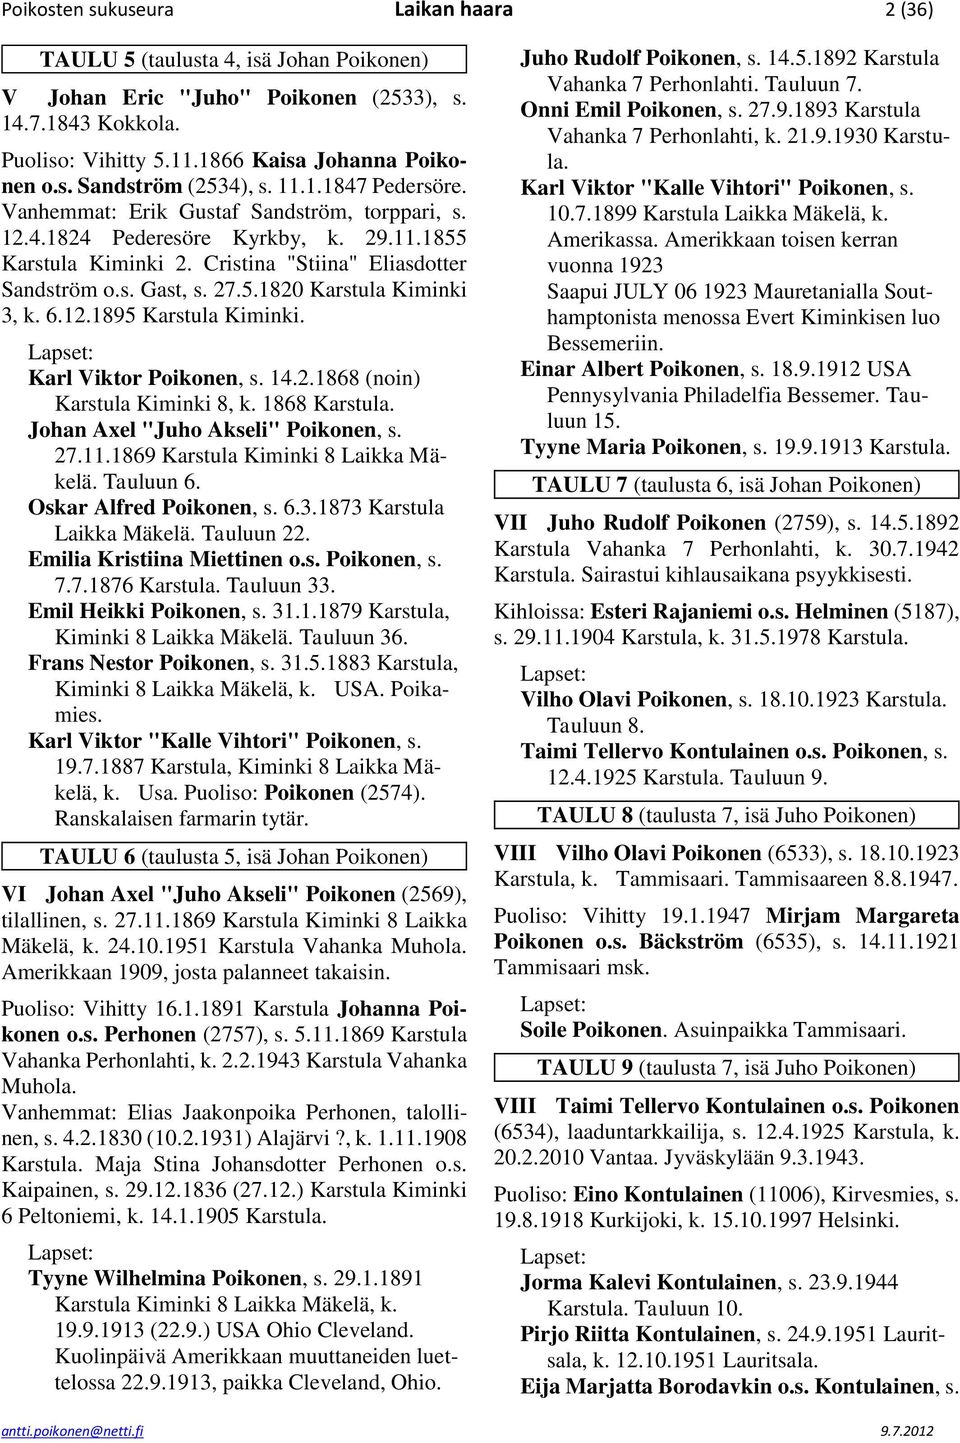 6.12.1895 Karstula Kiminki. Karl Viktor Poikonen, s. 14.2.1868 (noin) Karstula Kiminki 8, k. 1868 Johan Axel "Juho Akseli" Poikonen, s. 27.11.1869 Karstula Kiminki 8 Laikka Mäkelä. Tauluun 6.